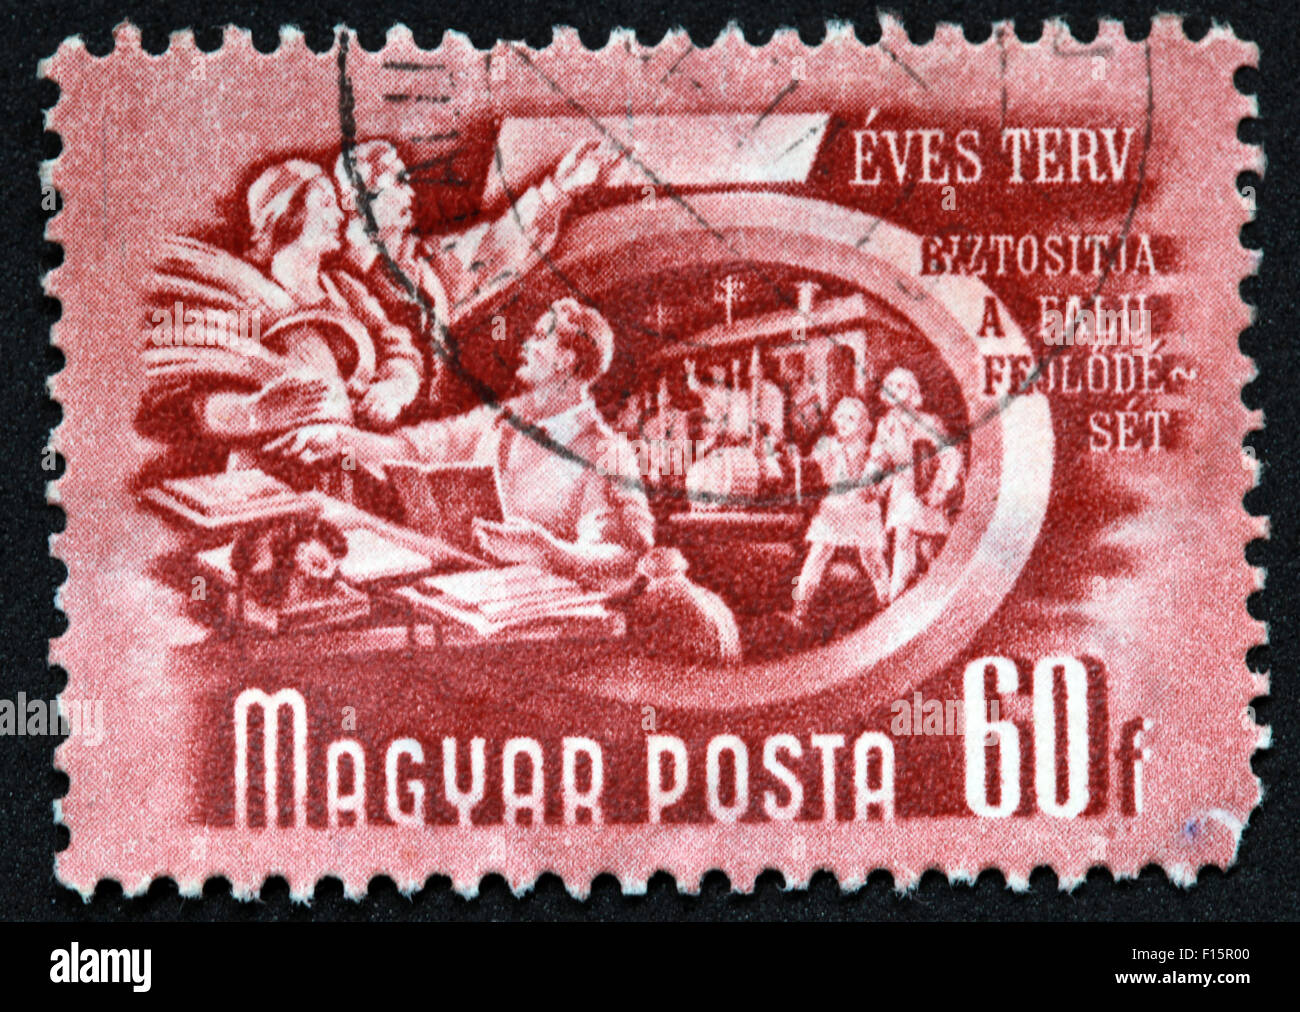 Magyar Posta 60f Eves Terv Biztositja a falu feulode set Stamp, Hungary Stock Photo